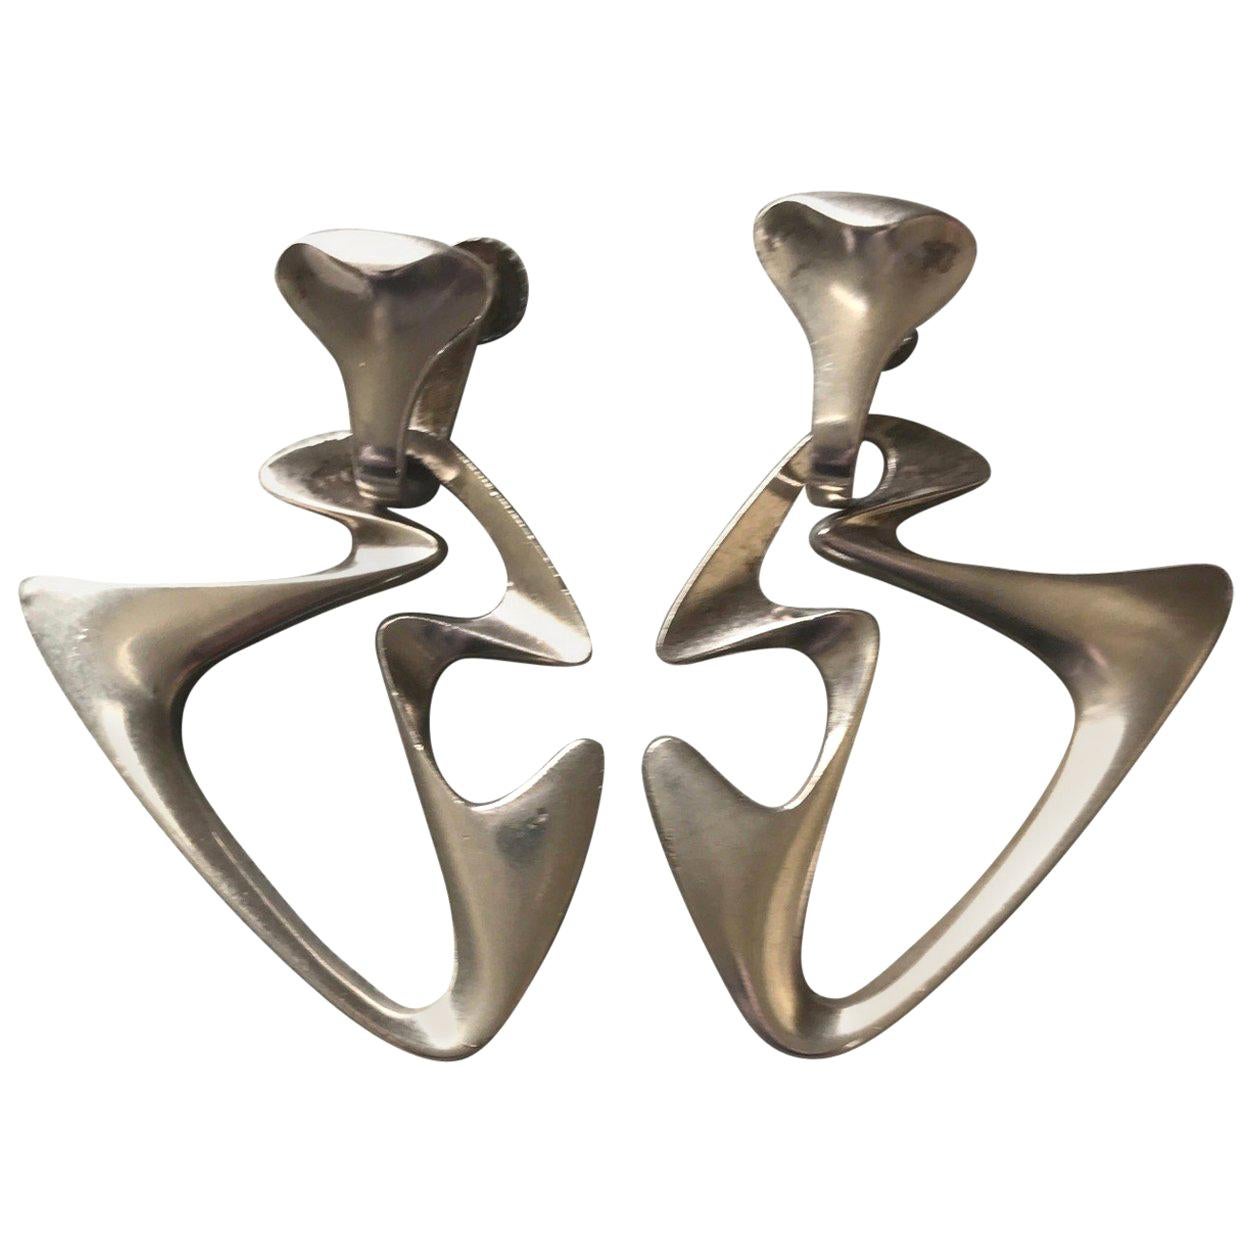 Georg Jensen "Amoeba" Dangle Earrings by Henning Koppel, No. 125 For Sale